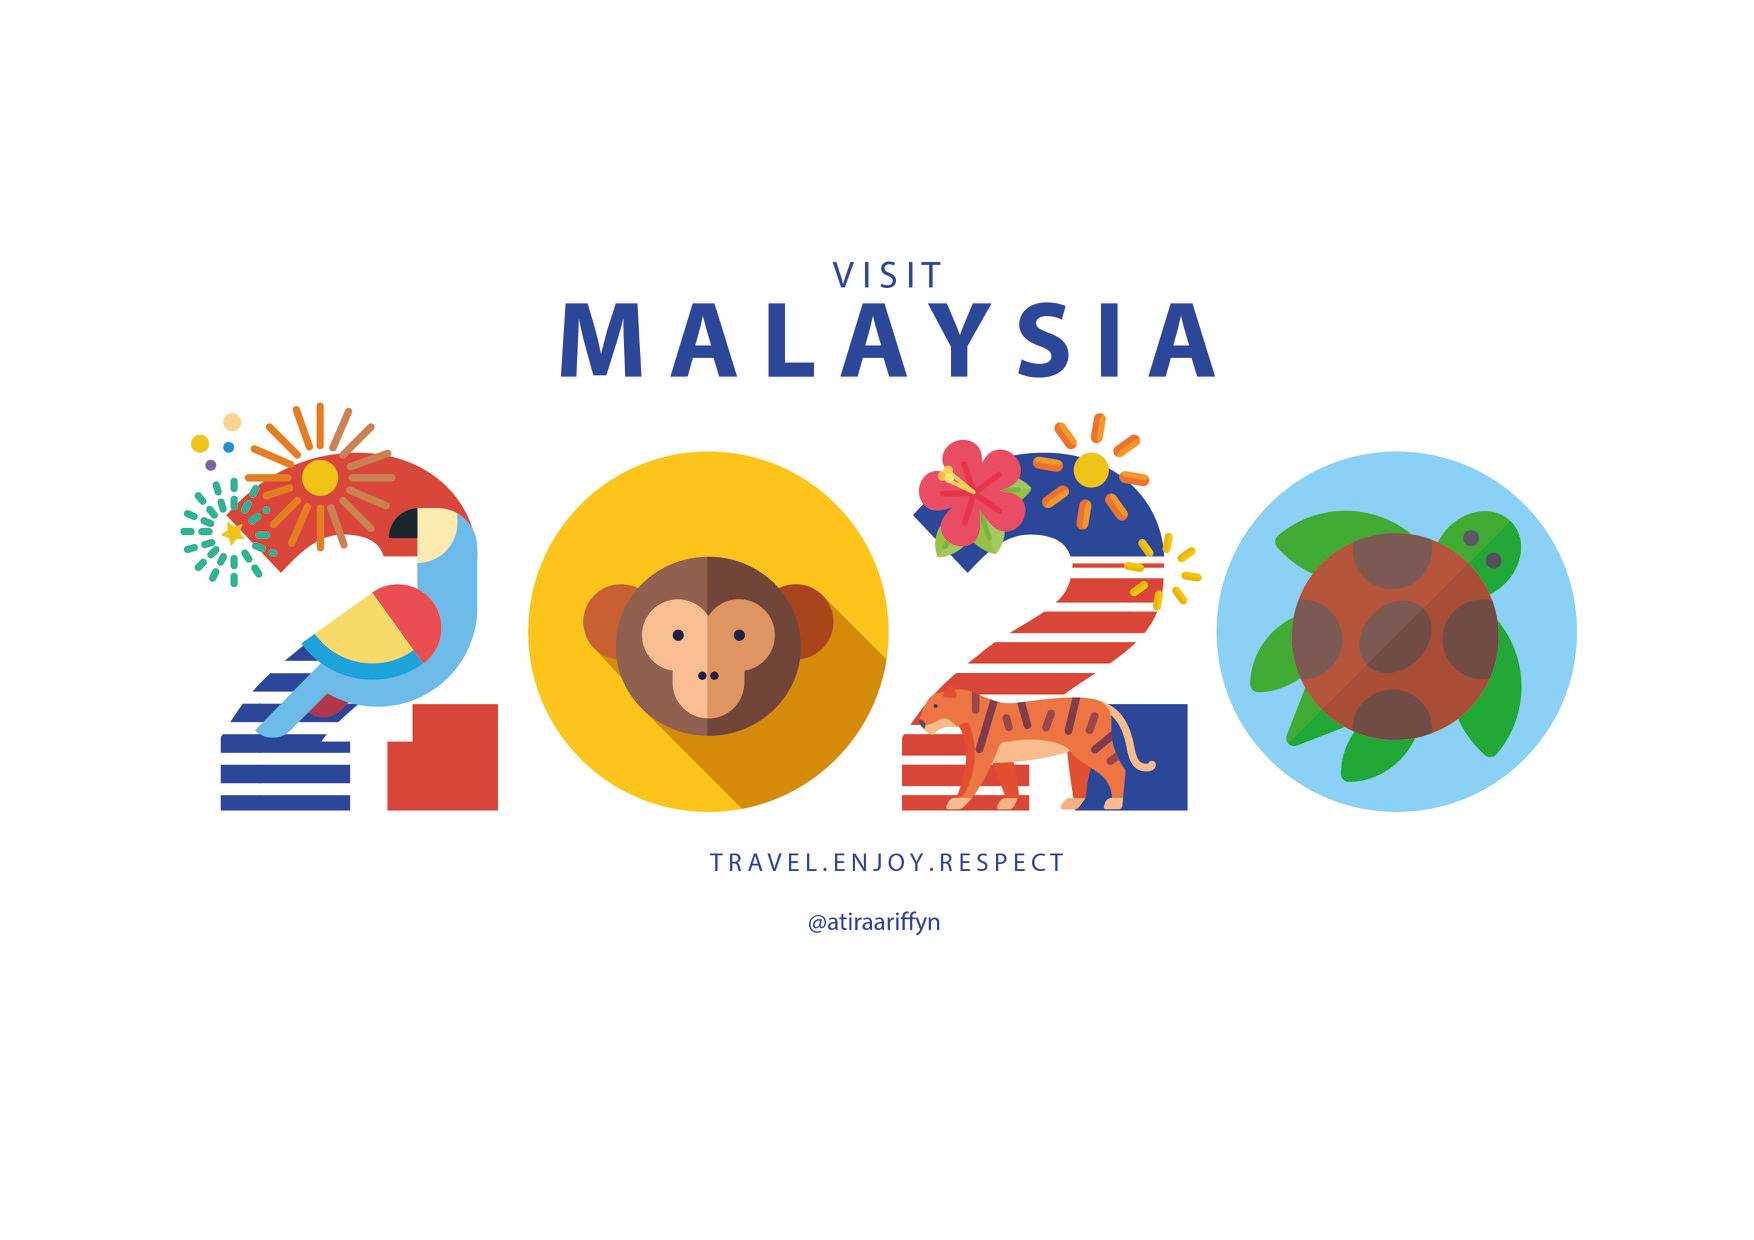 Tampak Murahan, Logo Visit Malaysia 2020 Jadi Bahan Ejekan